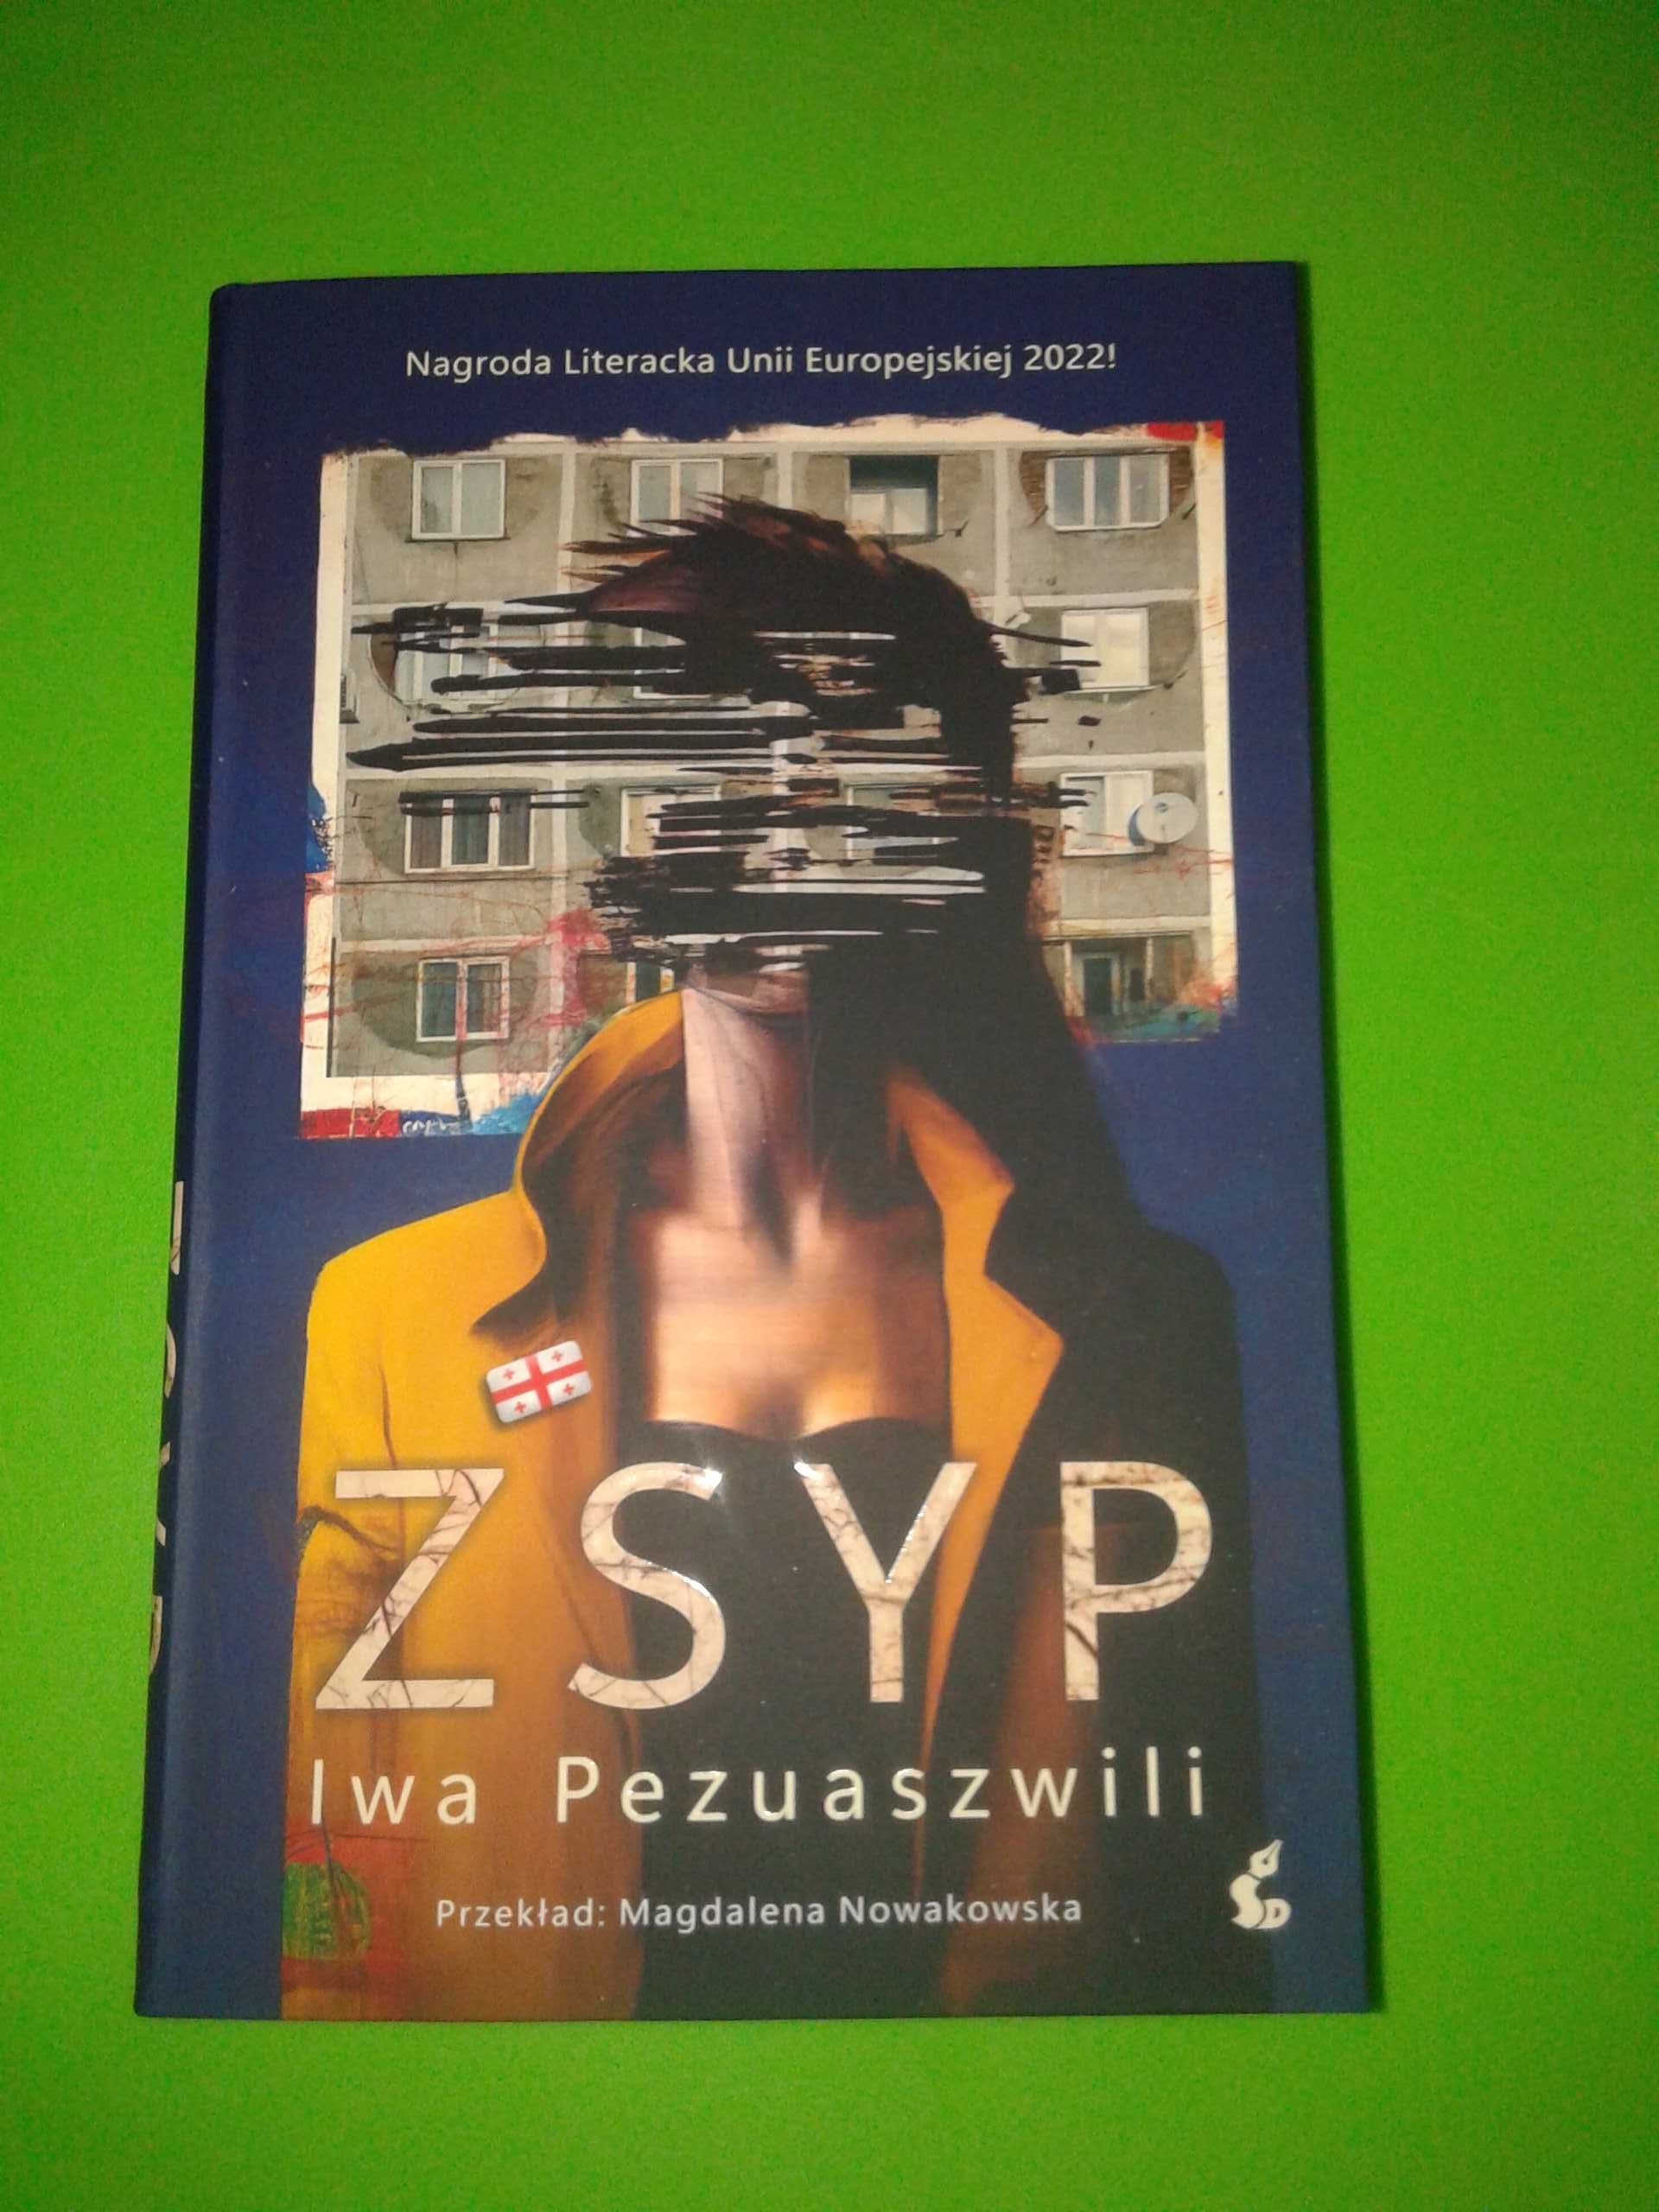 Zsyp - Iwa Pezuaszwili/ Nowa